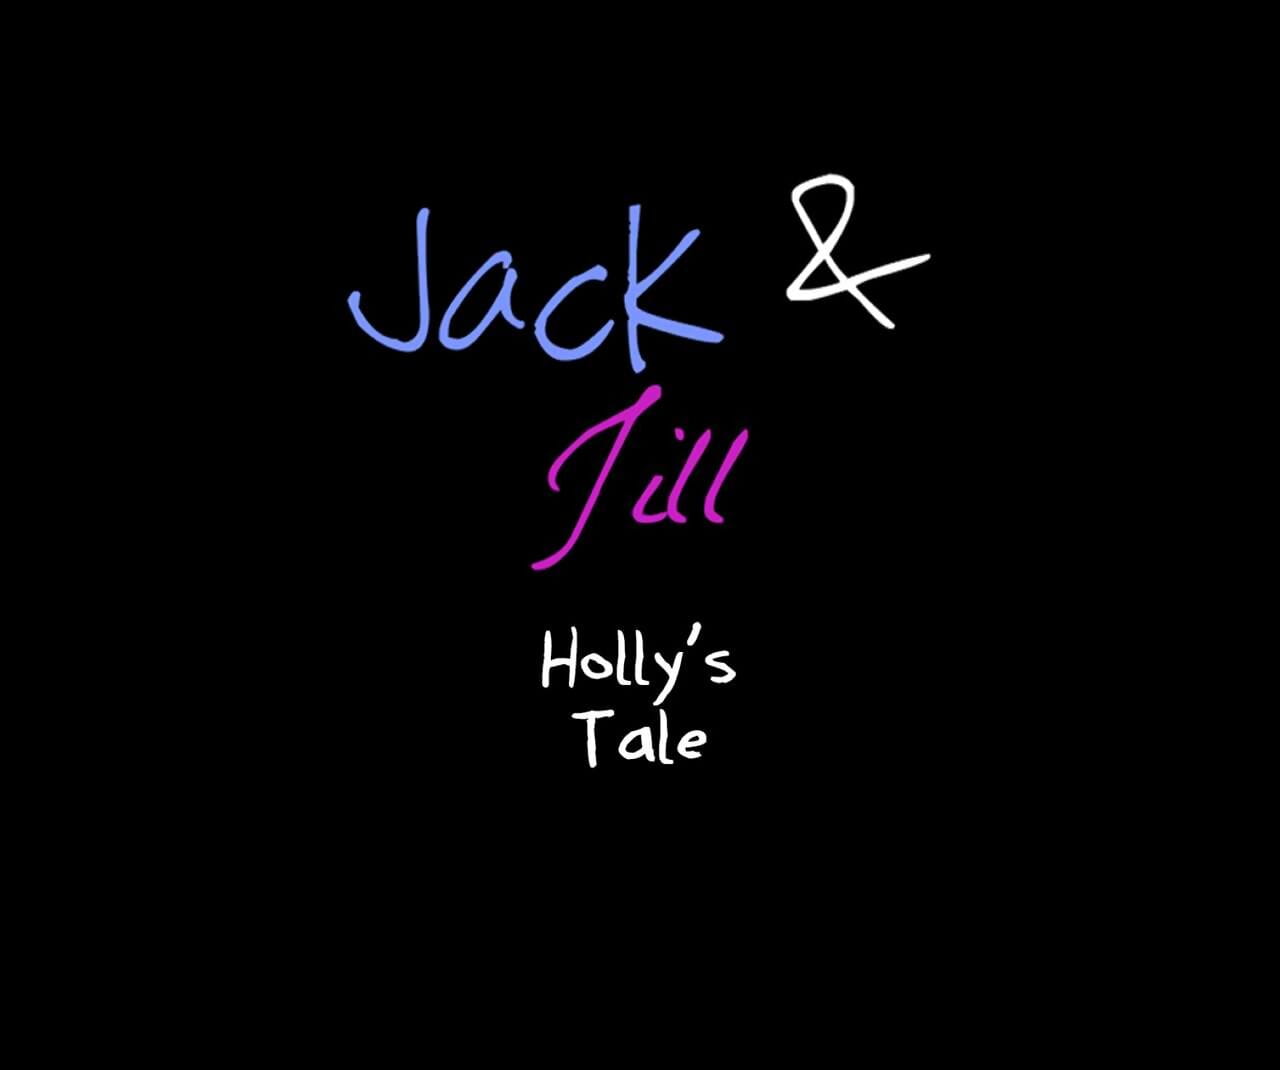 Jack và jill Hollys câu chuyện page 1